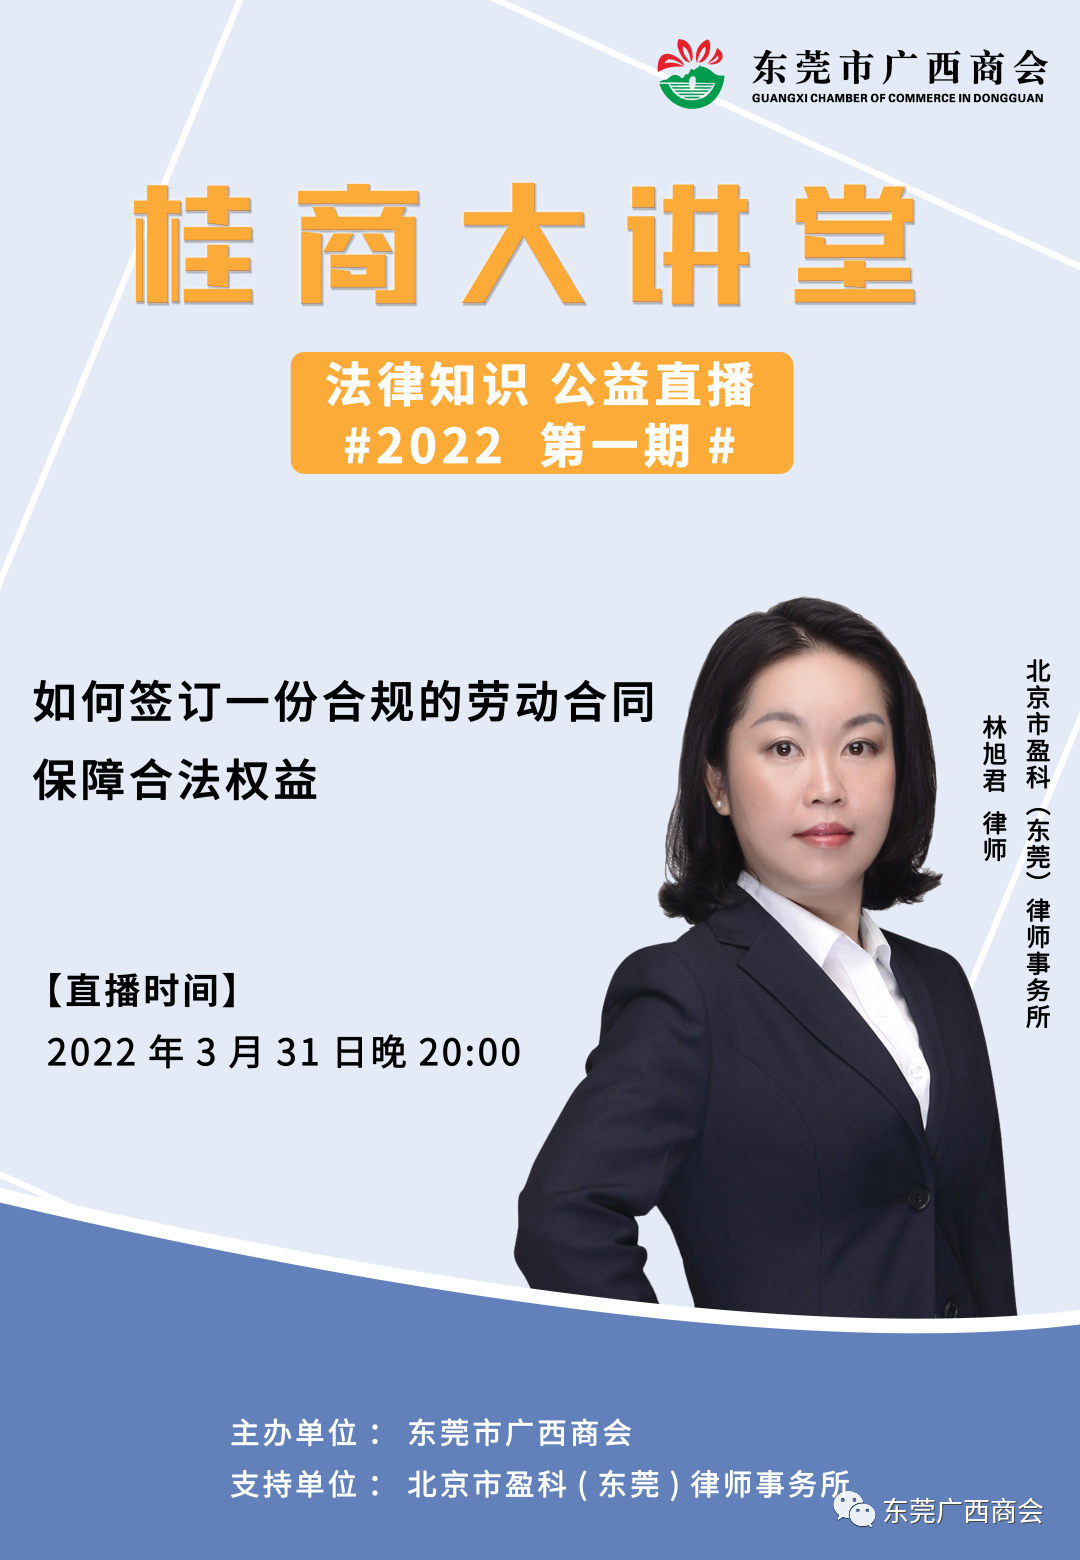 桂商大讲堂（2022第一期）——如何签订一份合规的劳动合同